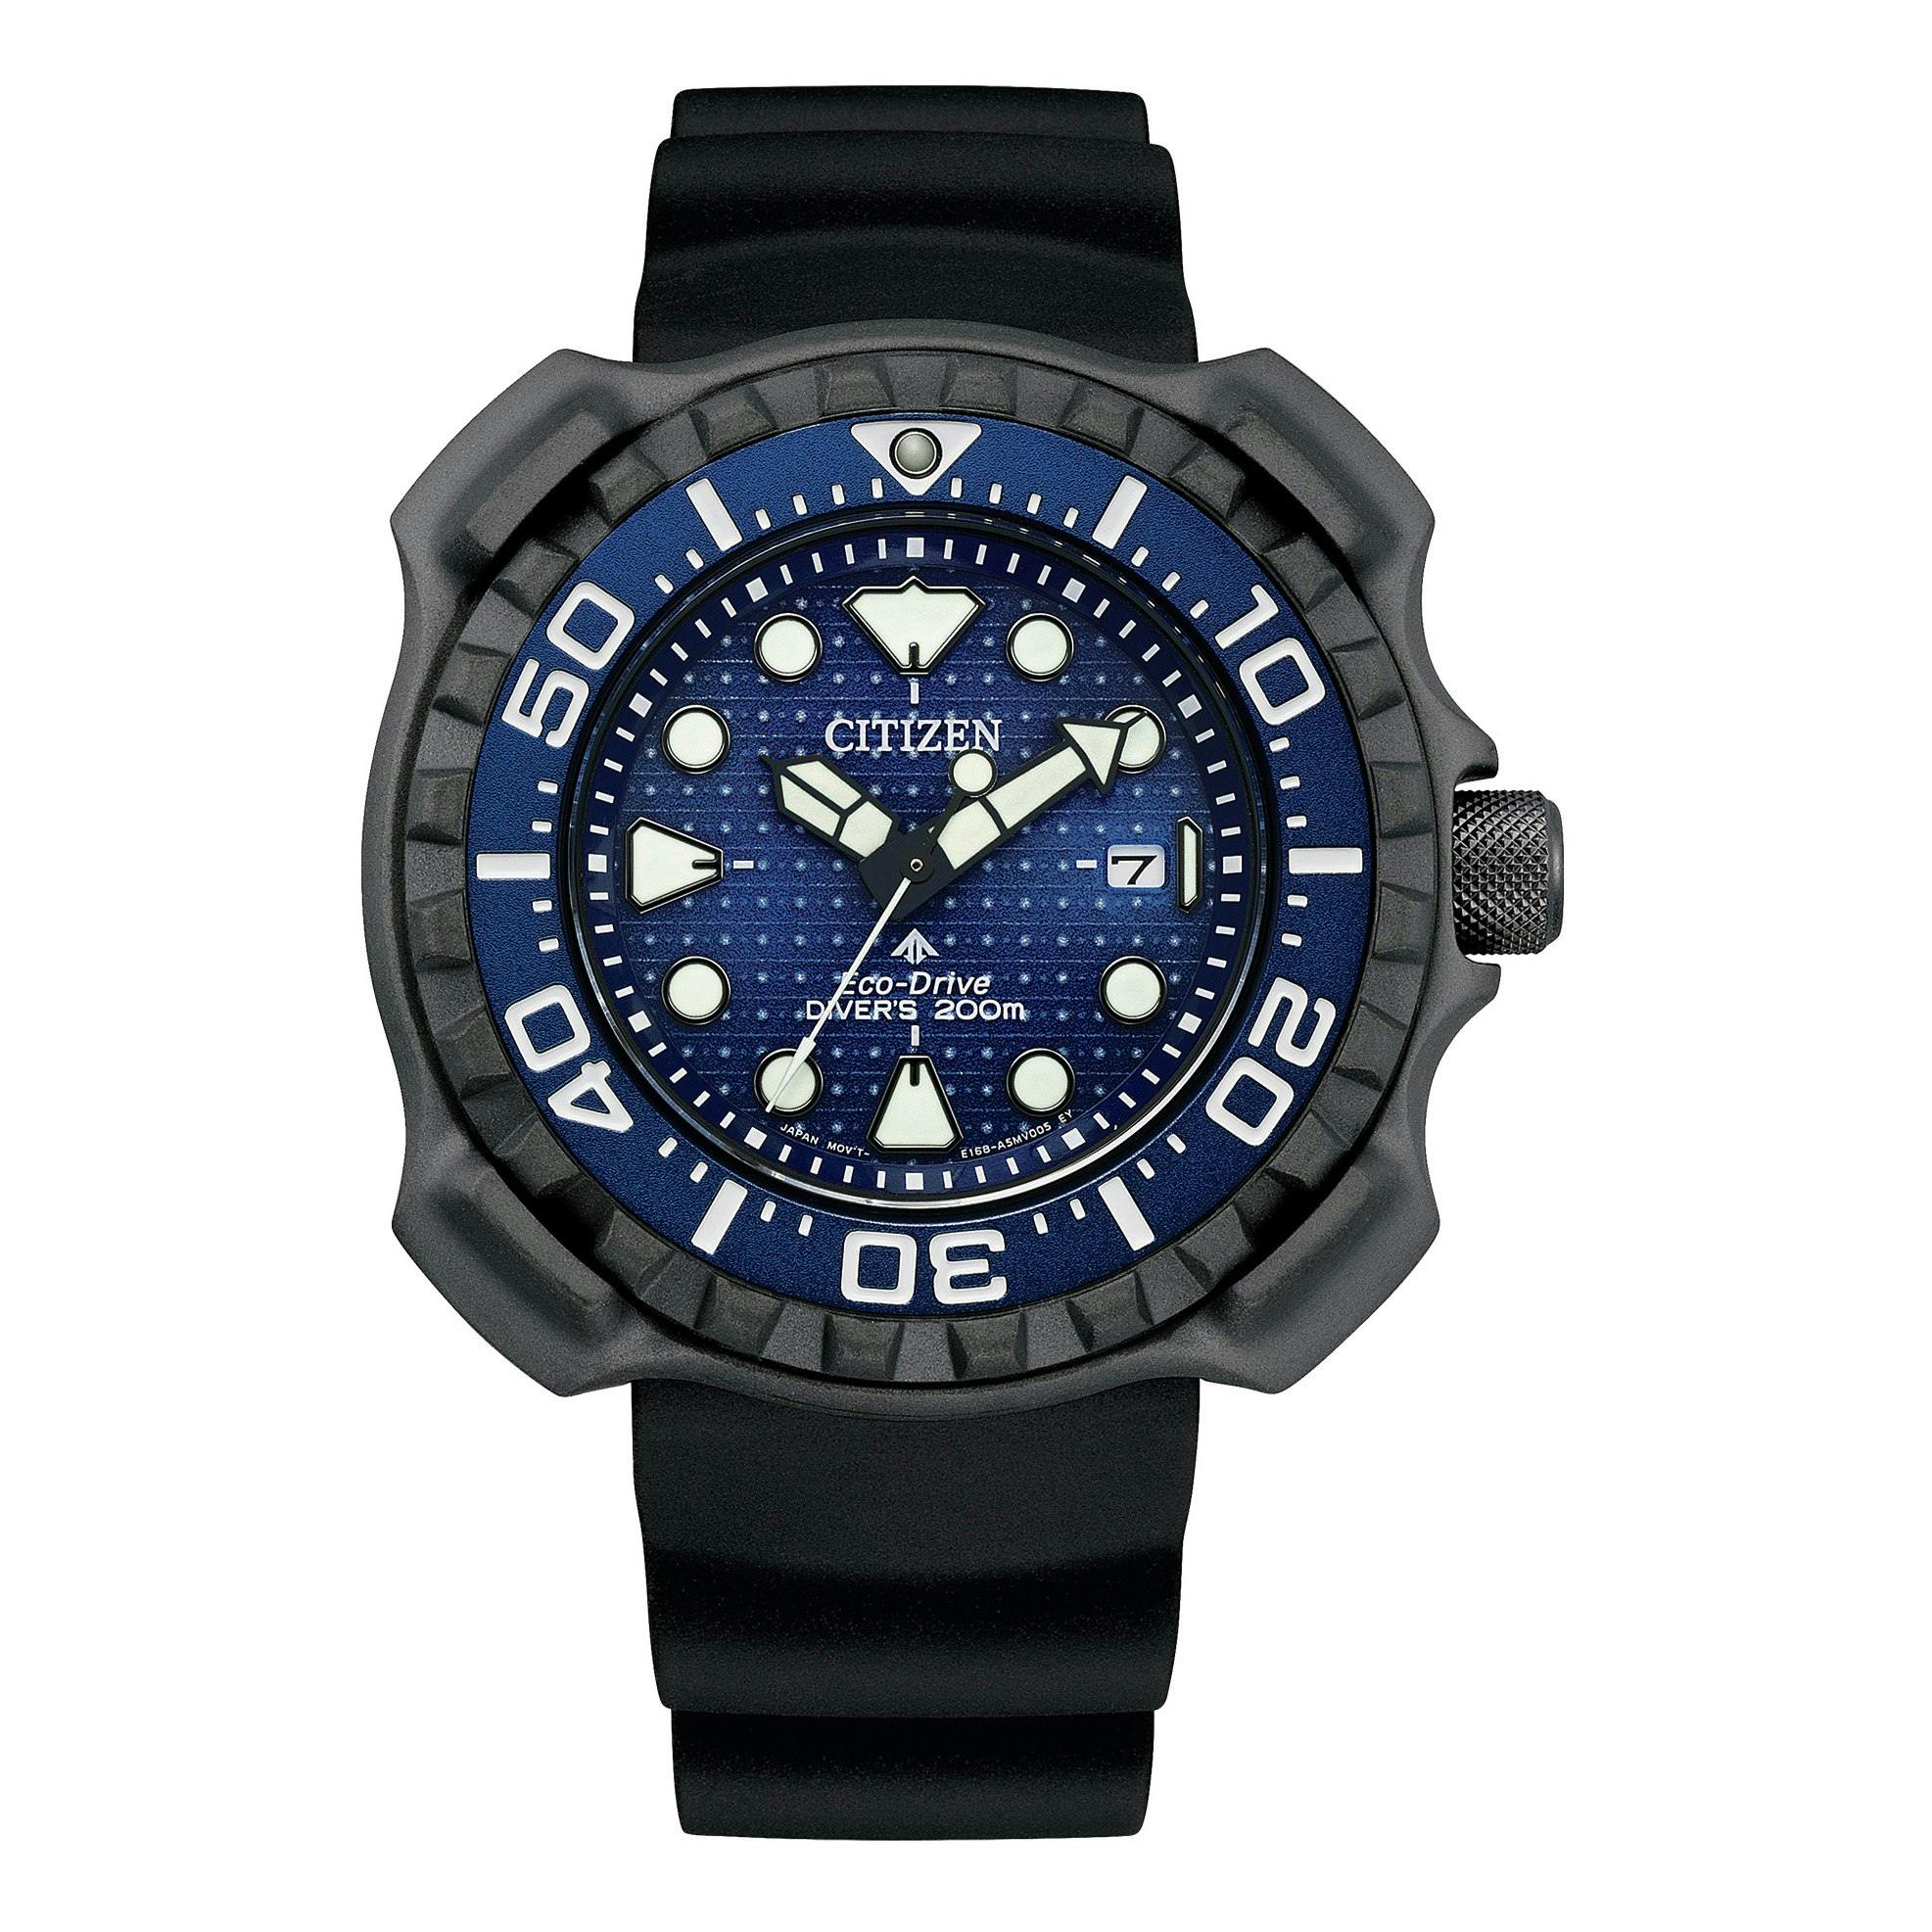 Promaster Eco-Dive Super Titanium Watch